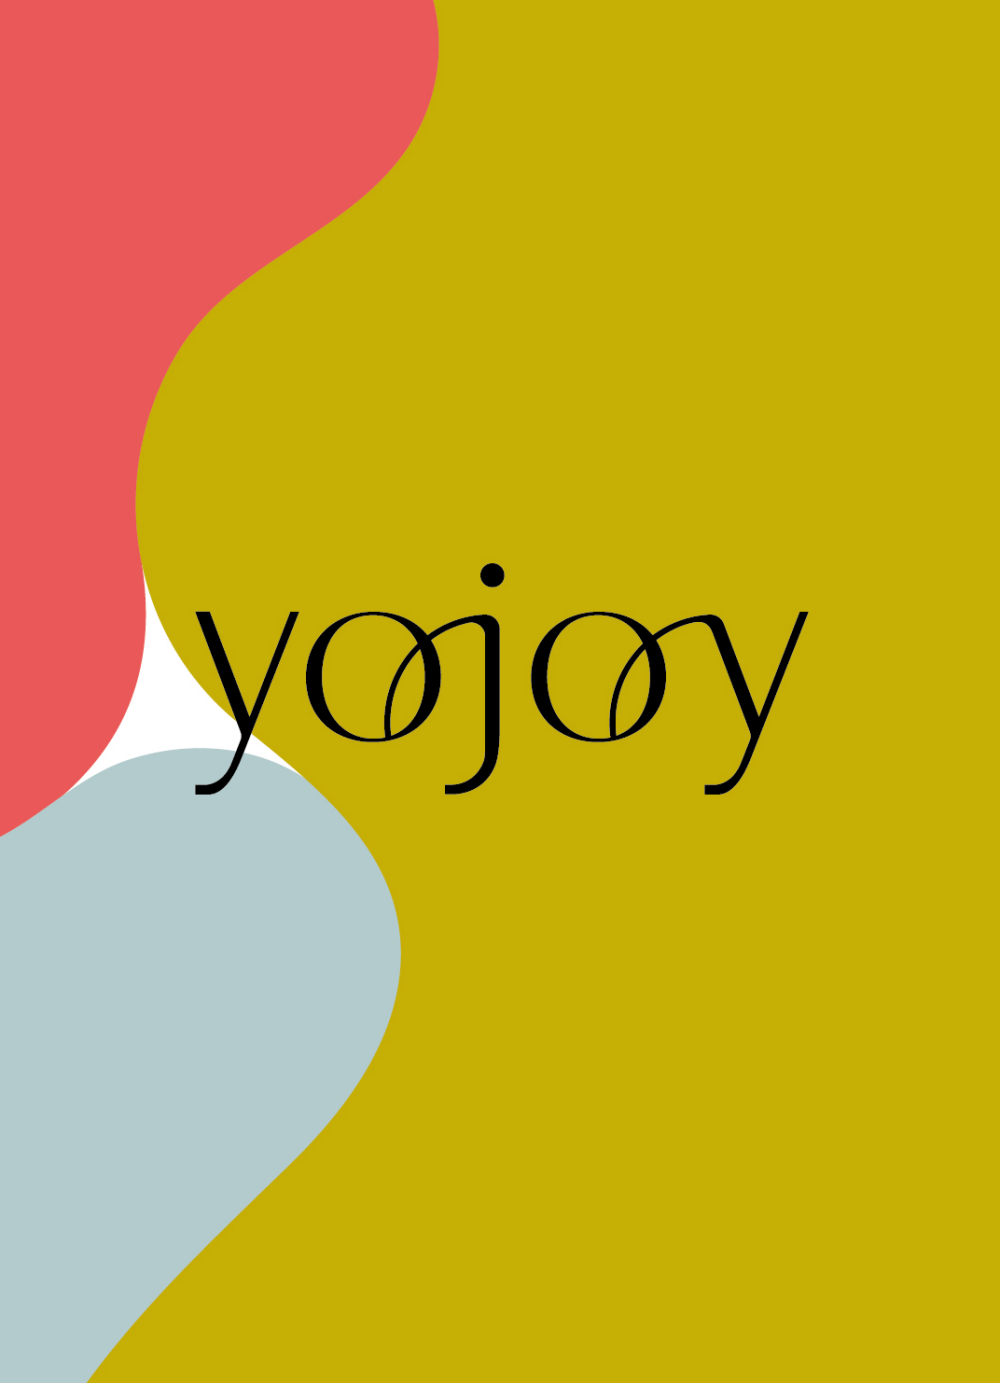 4階婦人肌着売場「ワコール」より新ブランド「YOJOY」登場のお知らせ